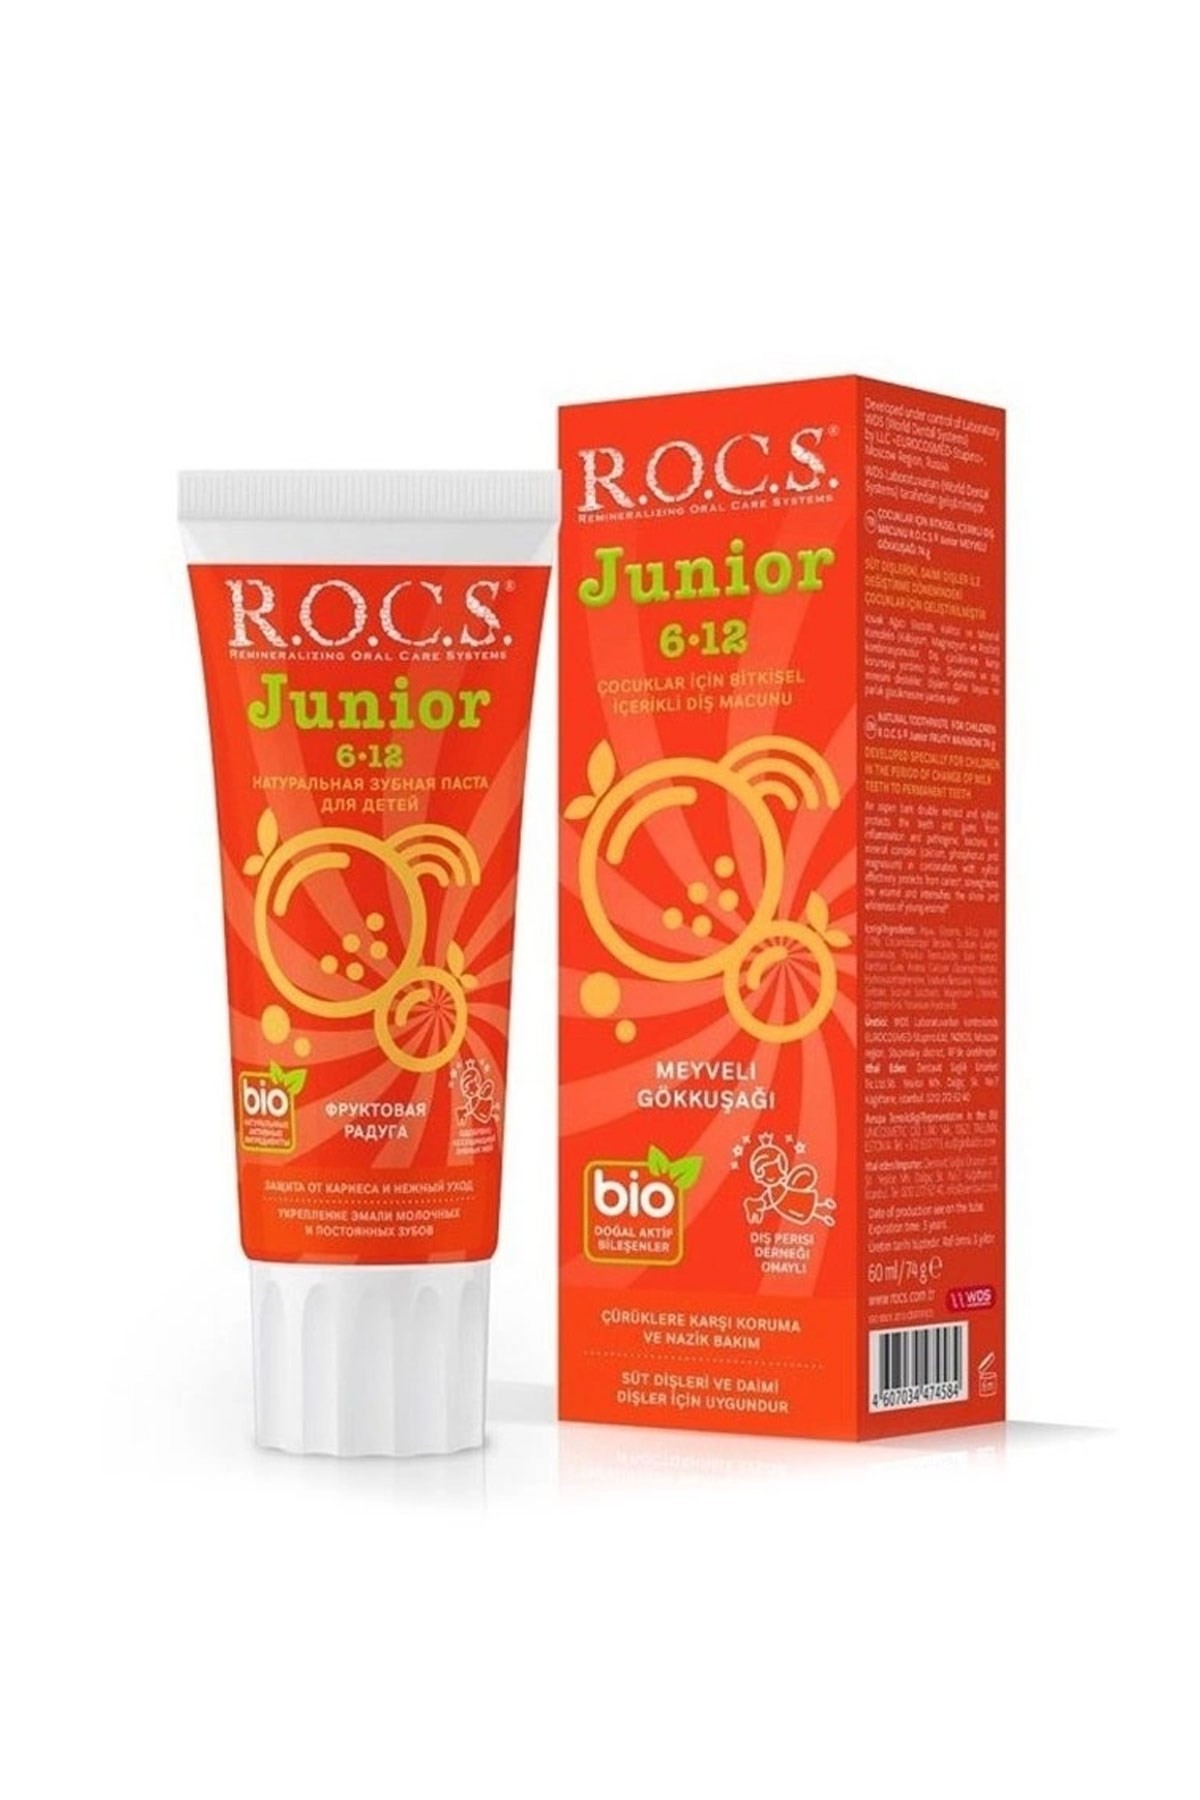 Rocs Junior Meyveli Gökkuşağı Diş Macunu 60 ml